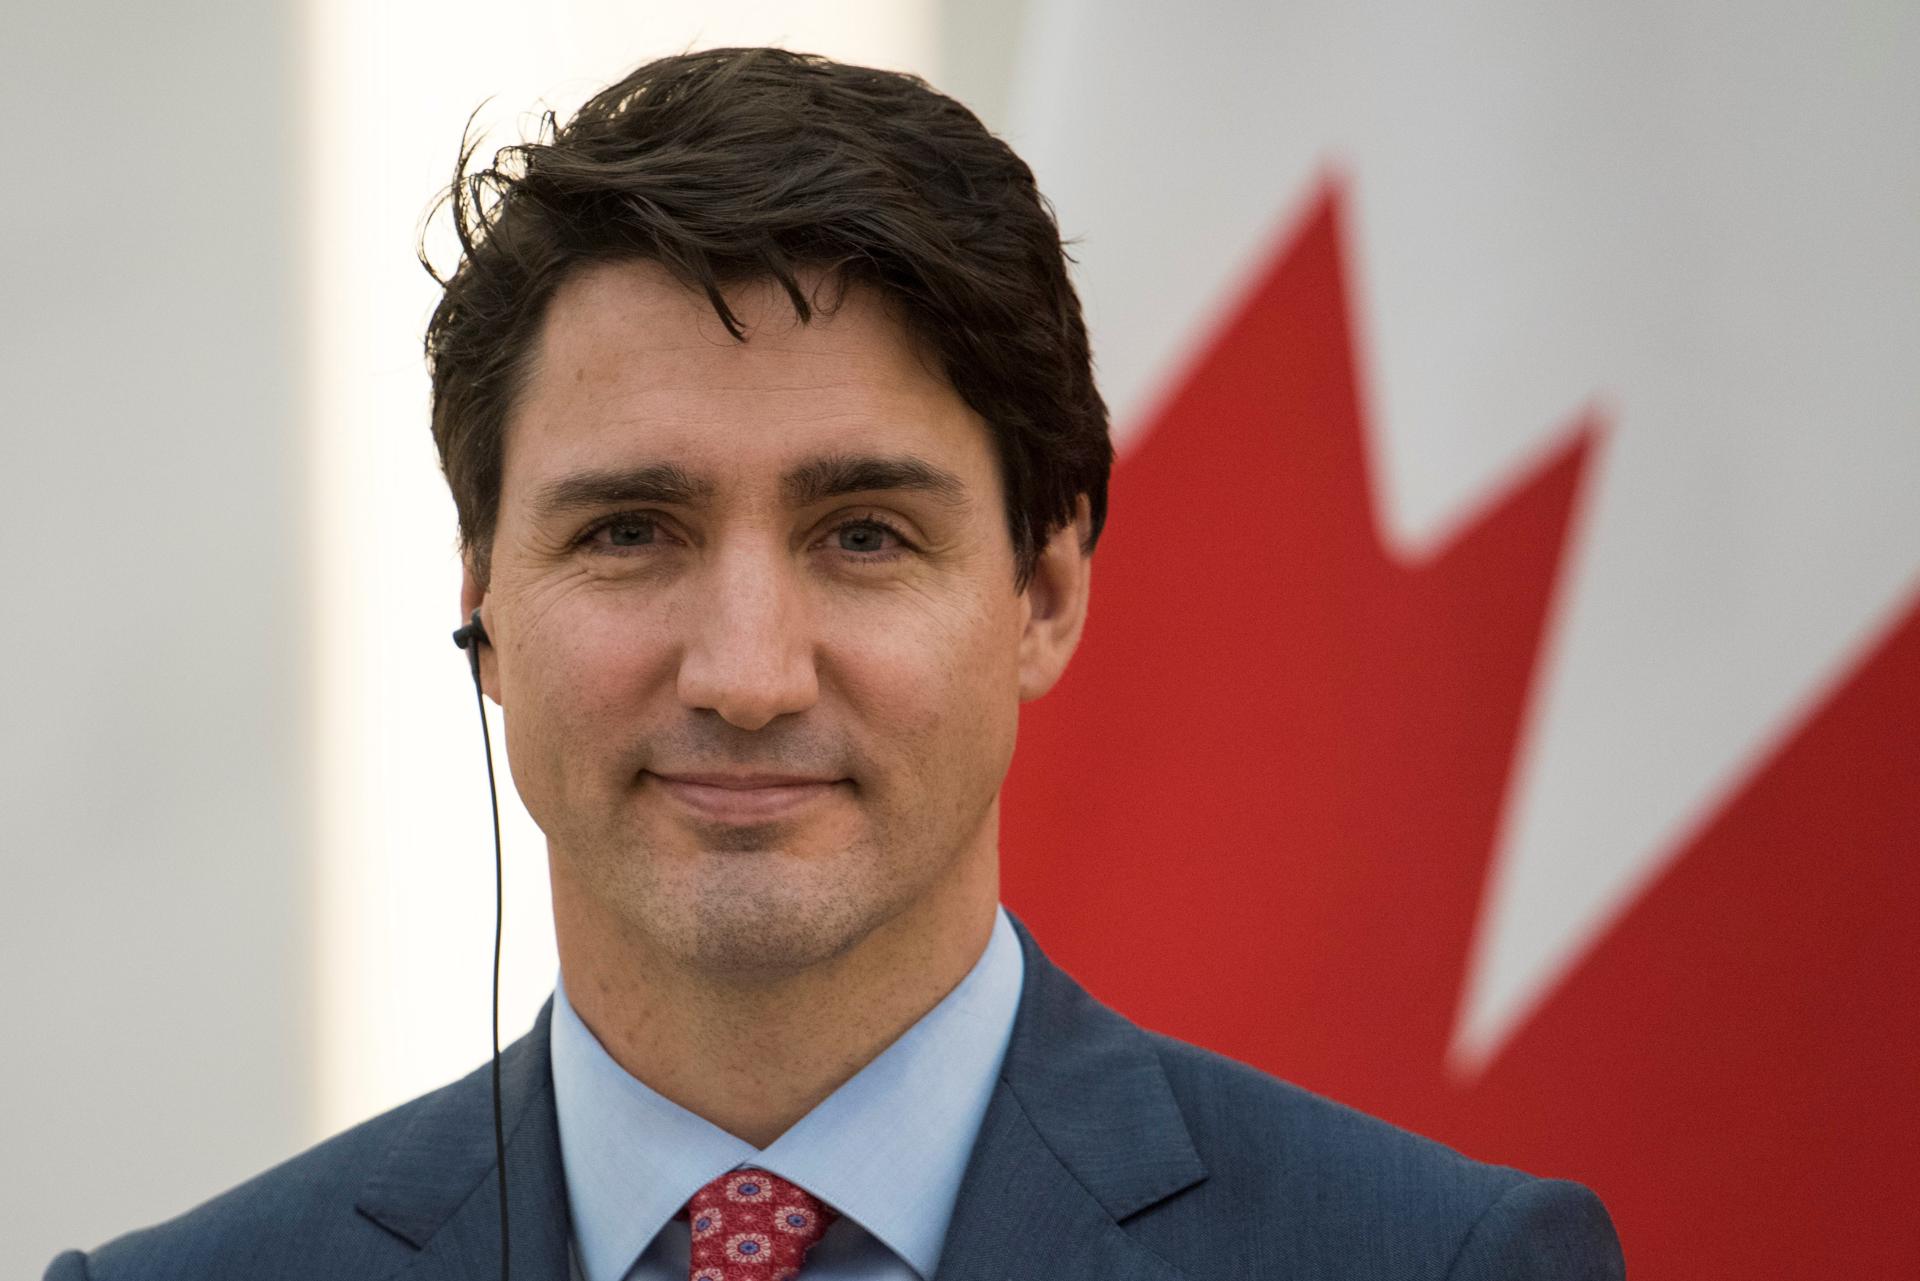 Imagen de archivo del primer ministro canadiense, Justin Trudeau. EFE/ Fred Dufour